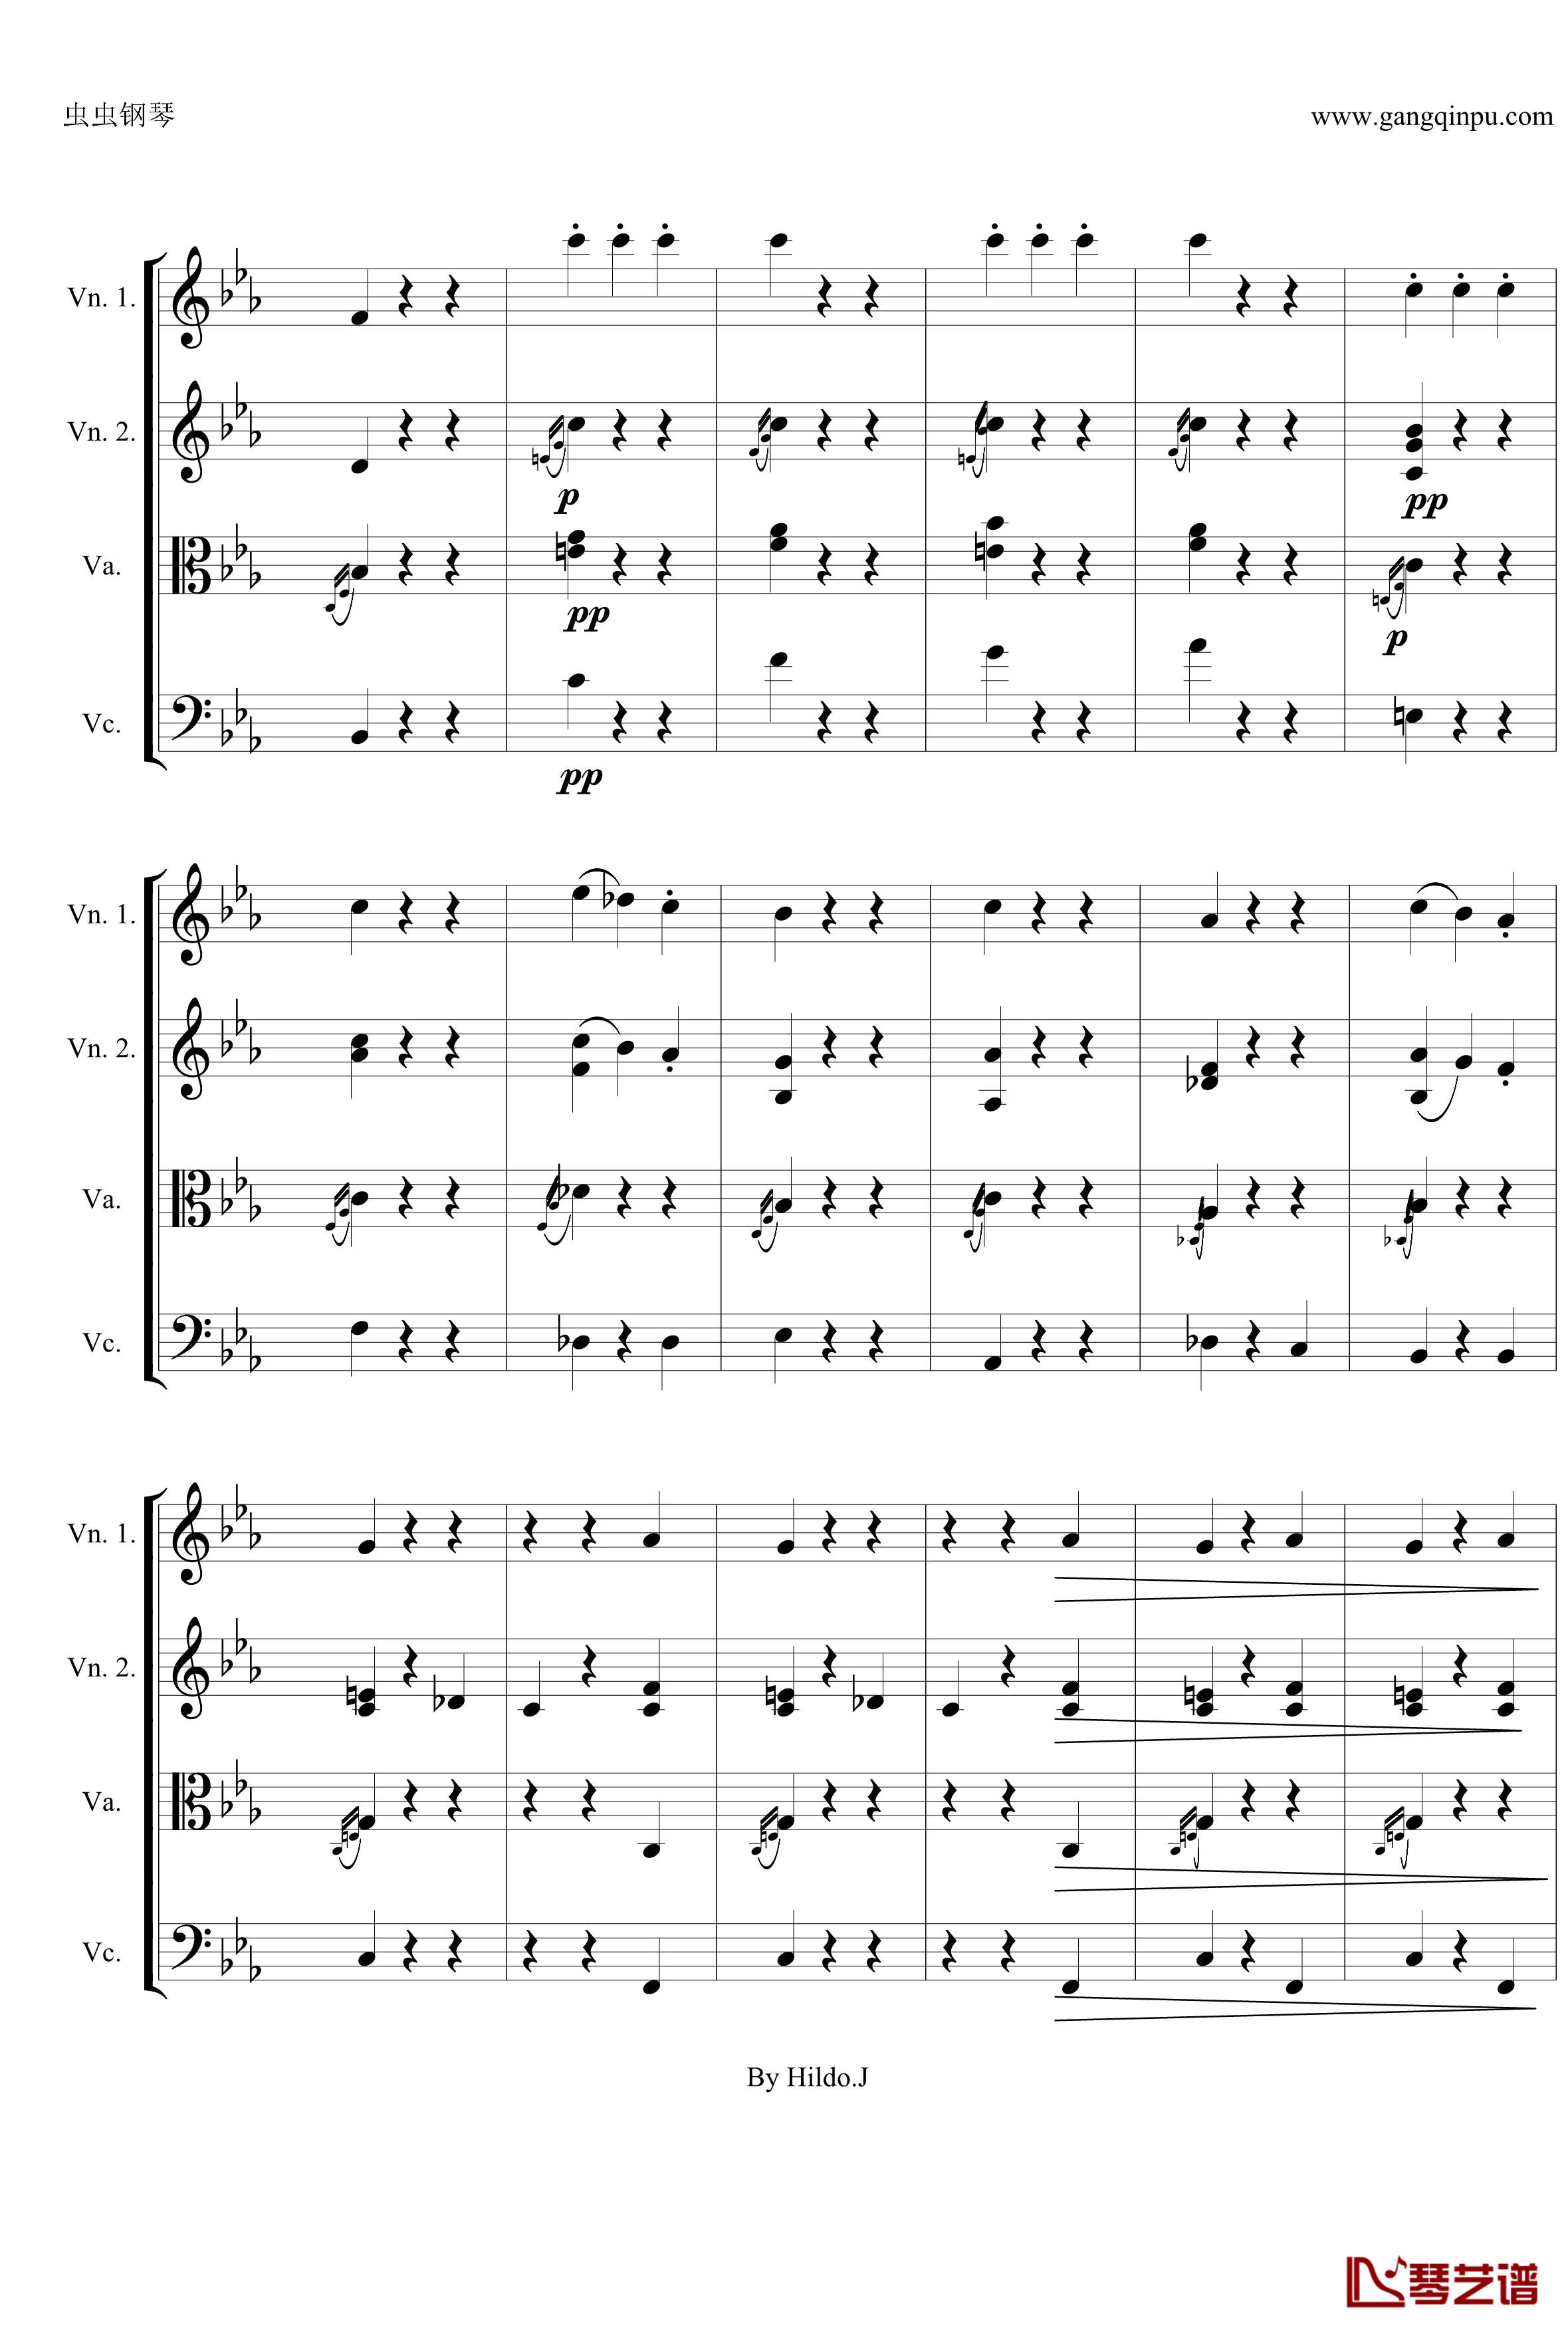 命运交响曲第三乐章钢琴谱-弦乐版-贝多芬-beethoven18